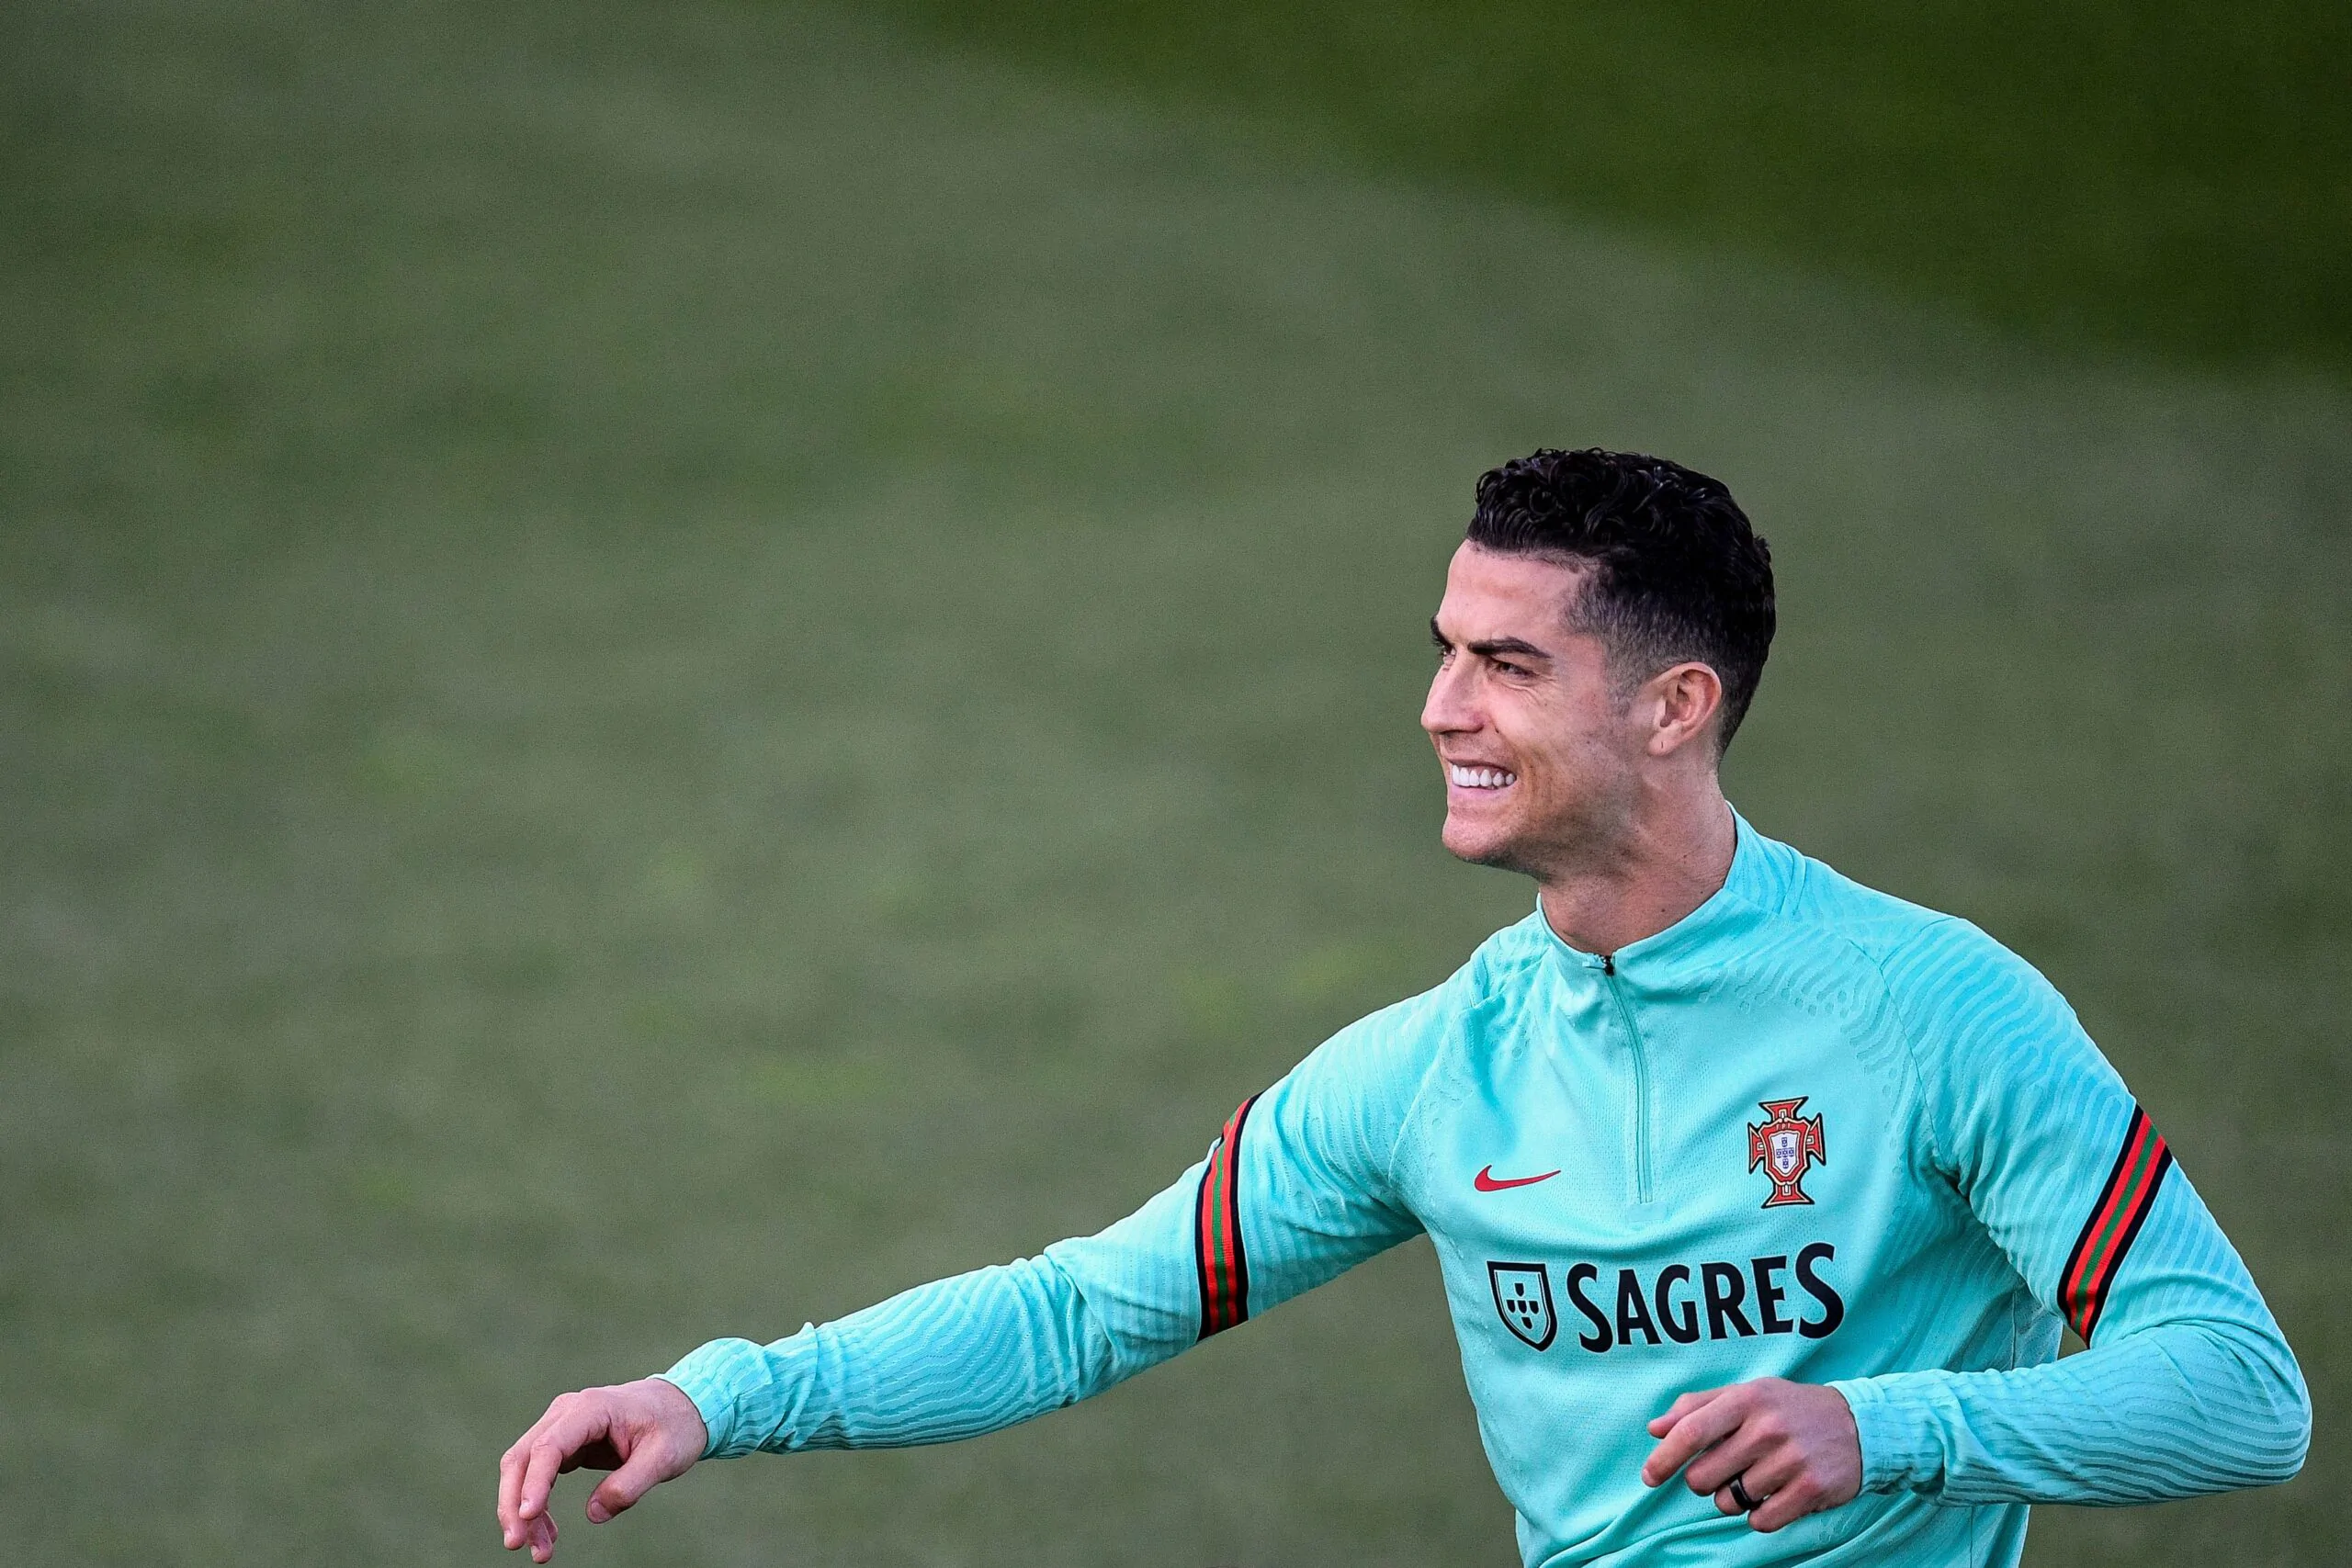 Playoff mondiali, Ronaldo suona la carica sui social